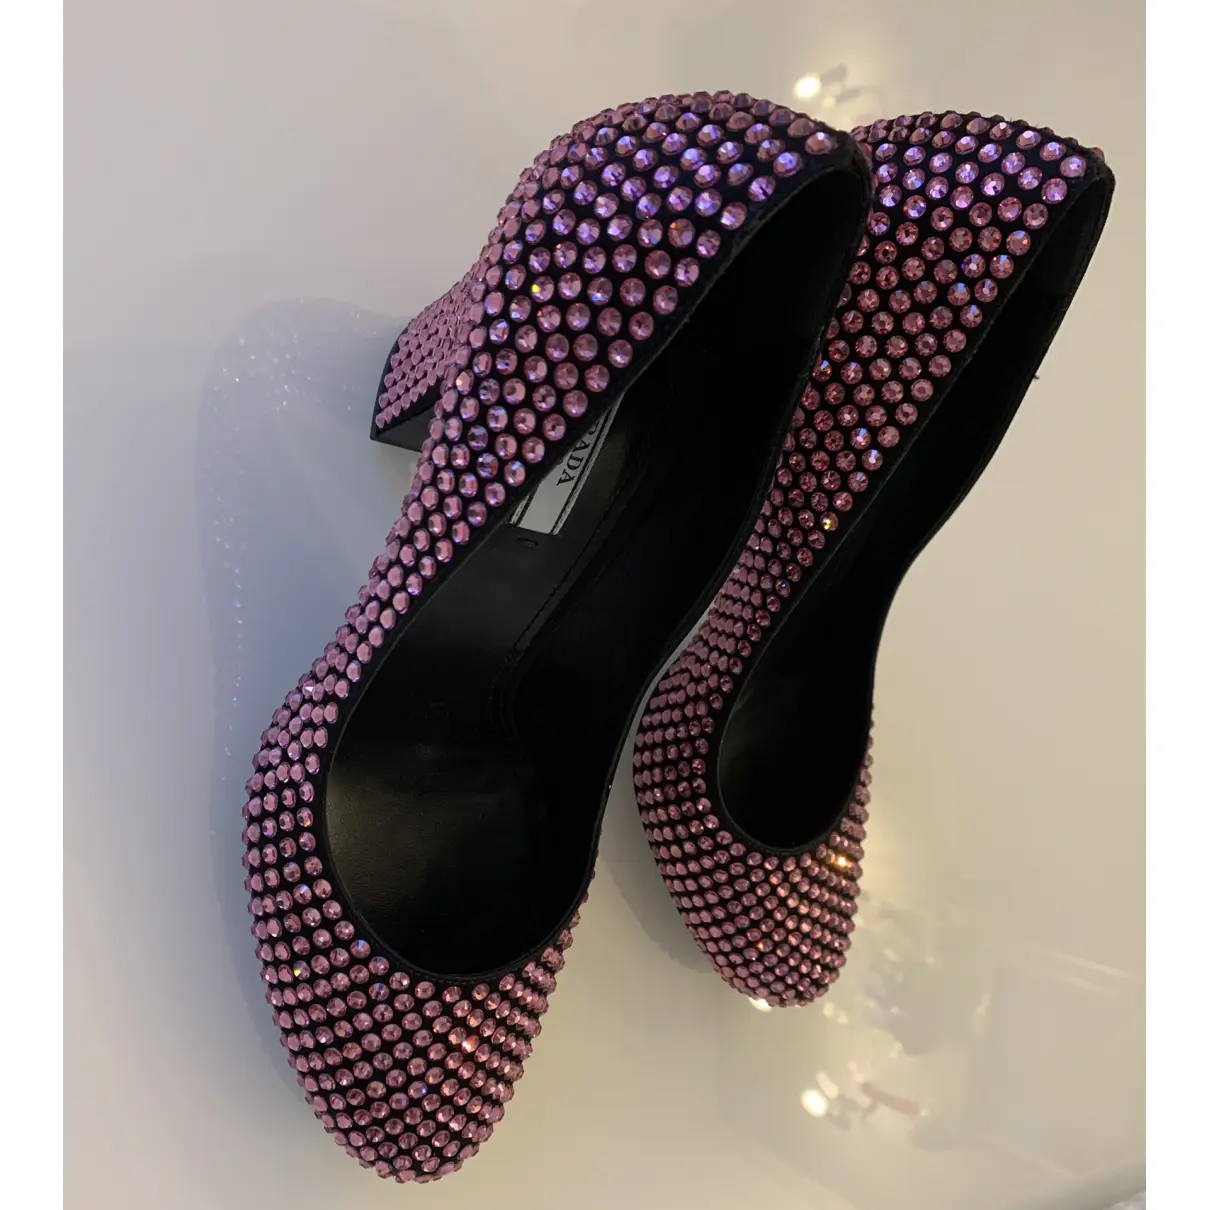 Buy Prada Glitter heels online